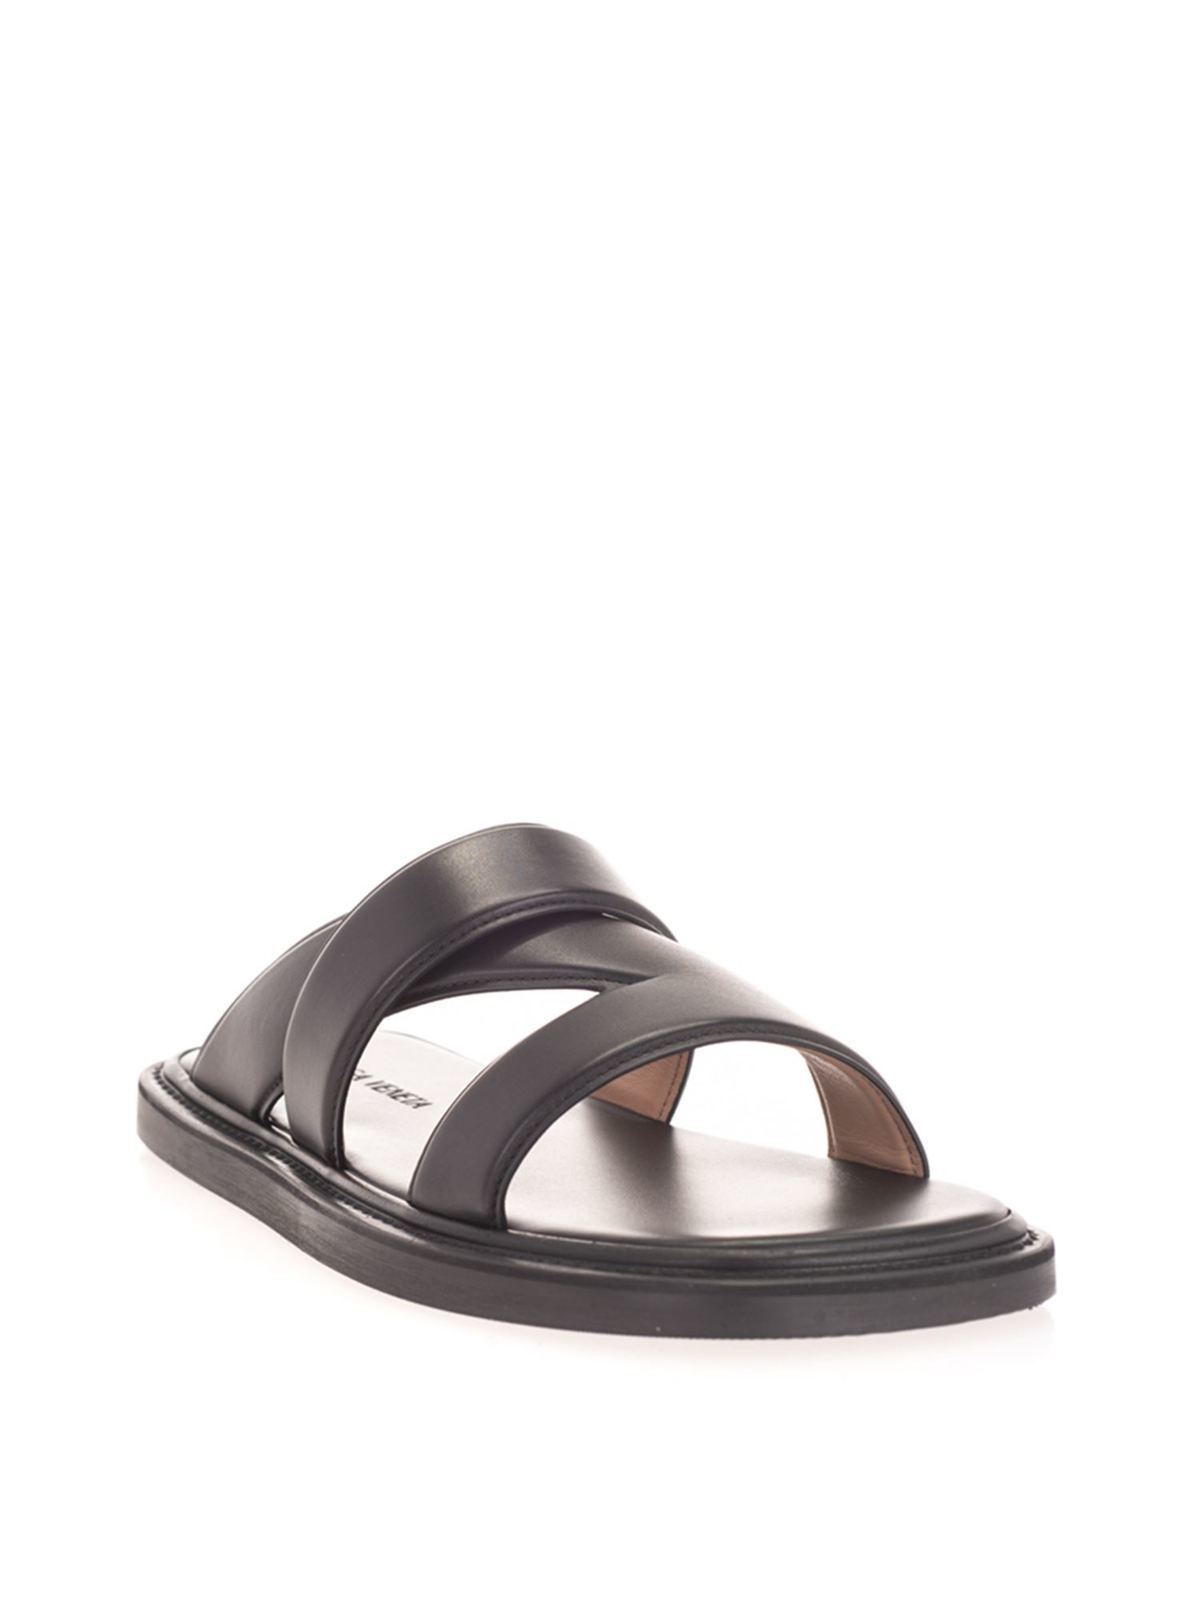 Flip flops Bottega Veneta - Woven leather slides in black - 651420VBSL01000